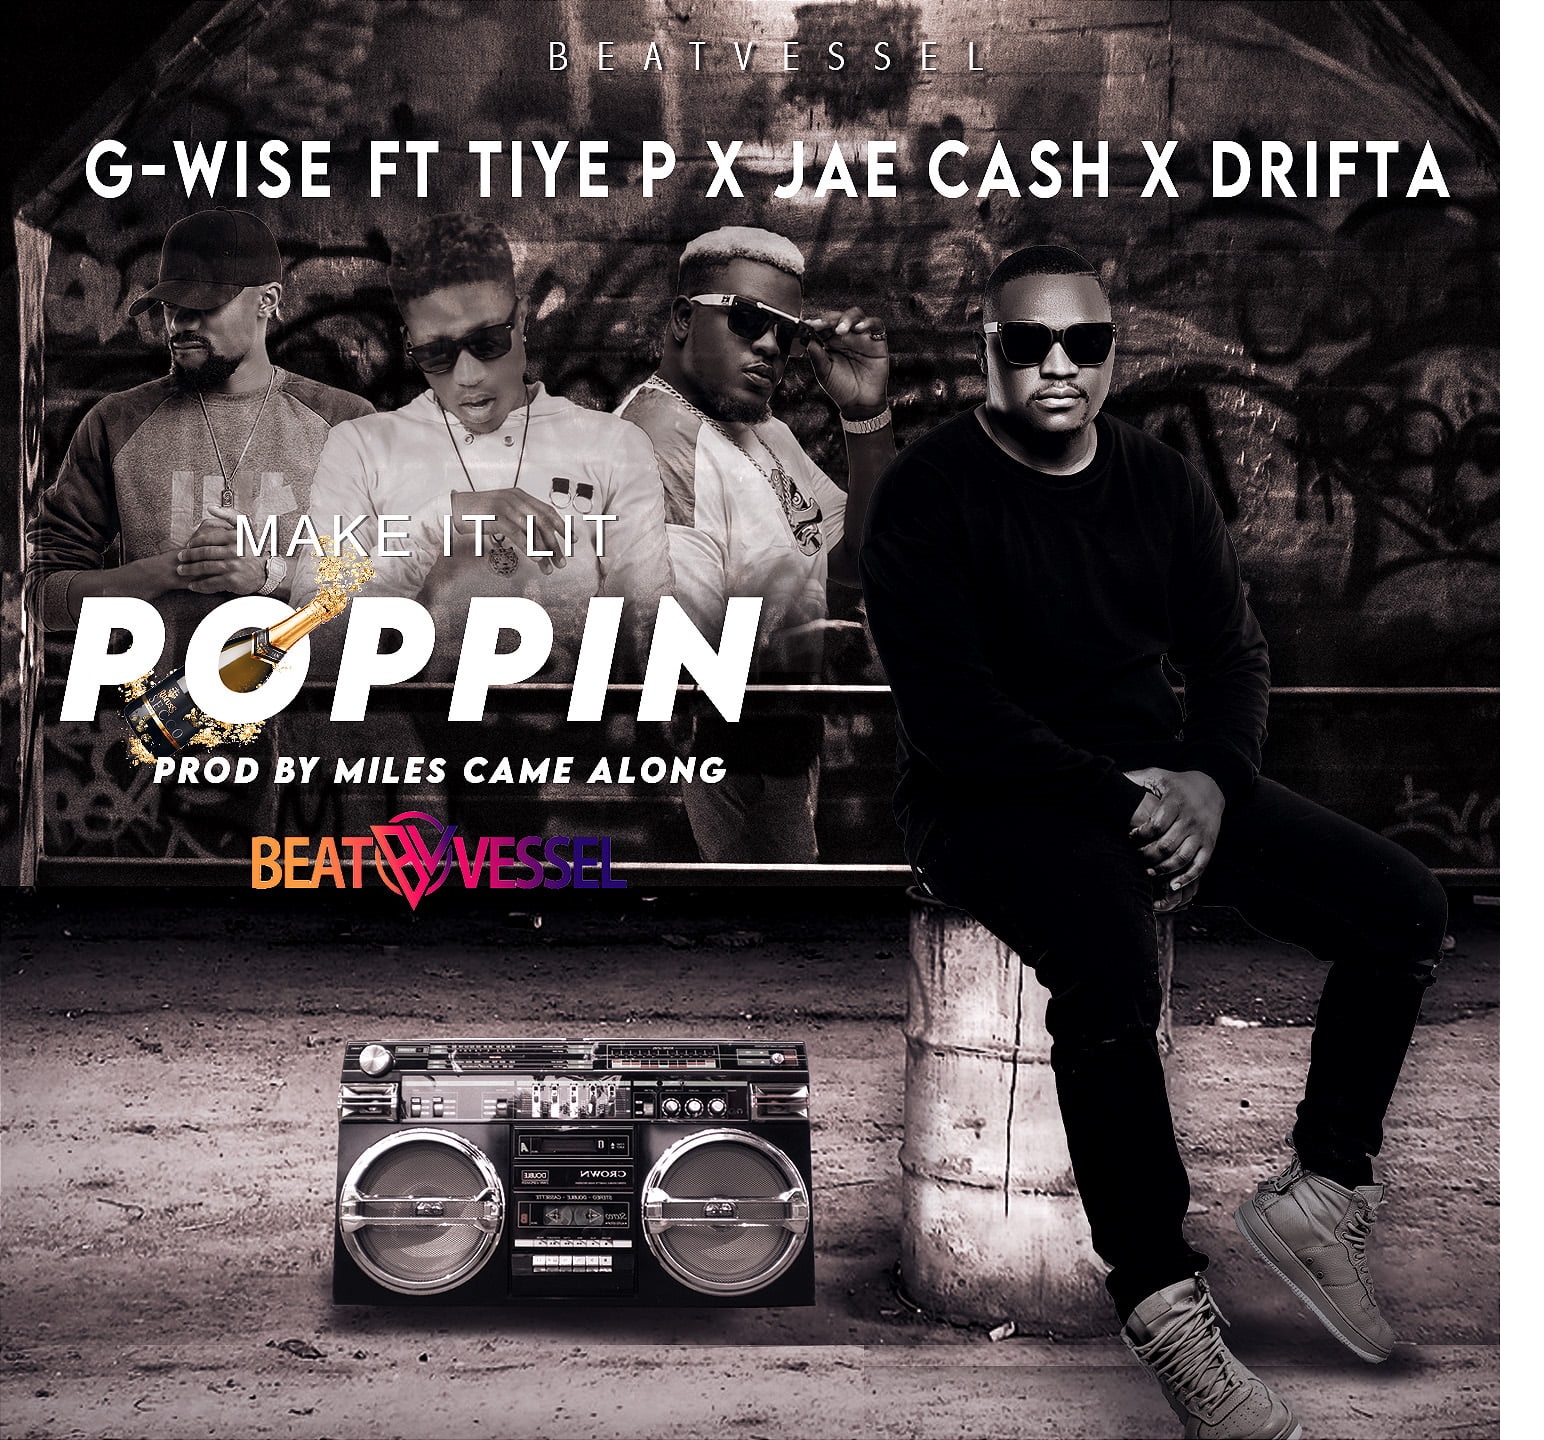 G Wise Ft. Tiye P, Drifta Trek & Jae Cash - 'Poppin (Make it lit)' Mp3 DOWNLOAD